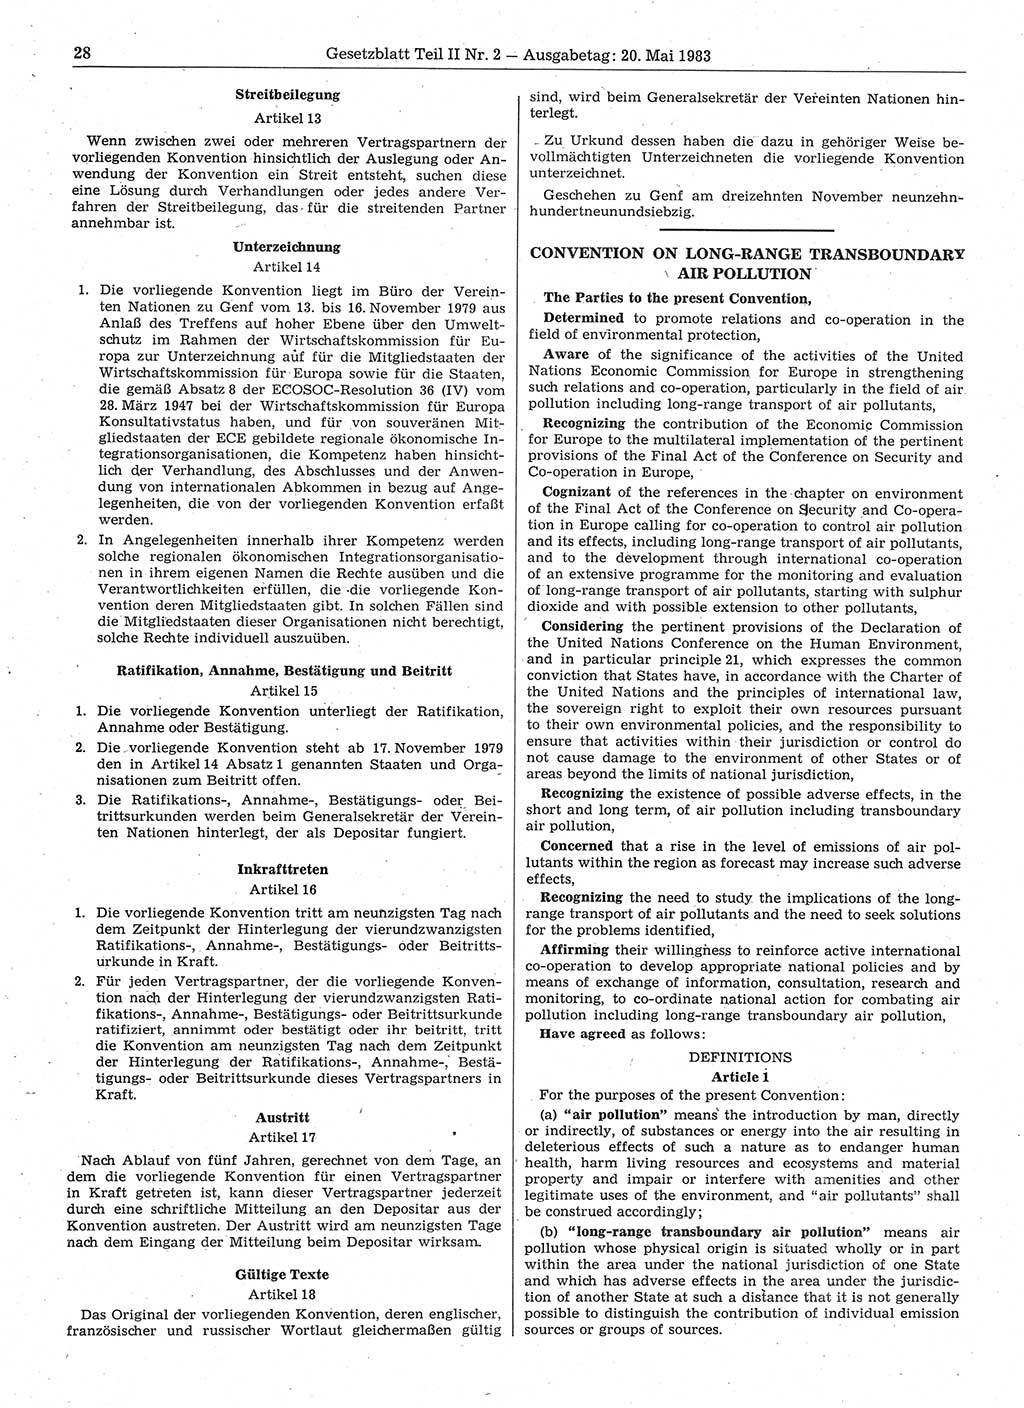 Gesetzblatt (GBl.) der Deutschen Demokratischen Republik (DDR) Teil ⅠⅠ 1983, Seite 28 (GBl. DDR ⅠⅠ 1983, S. 28)